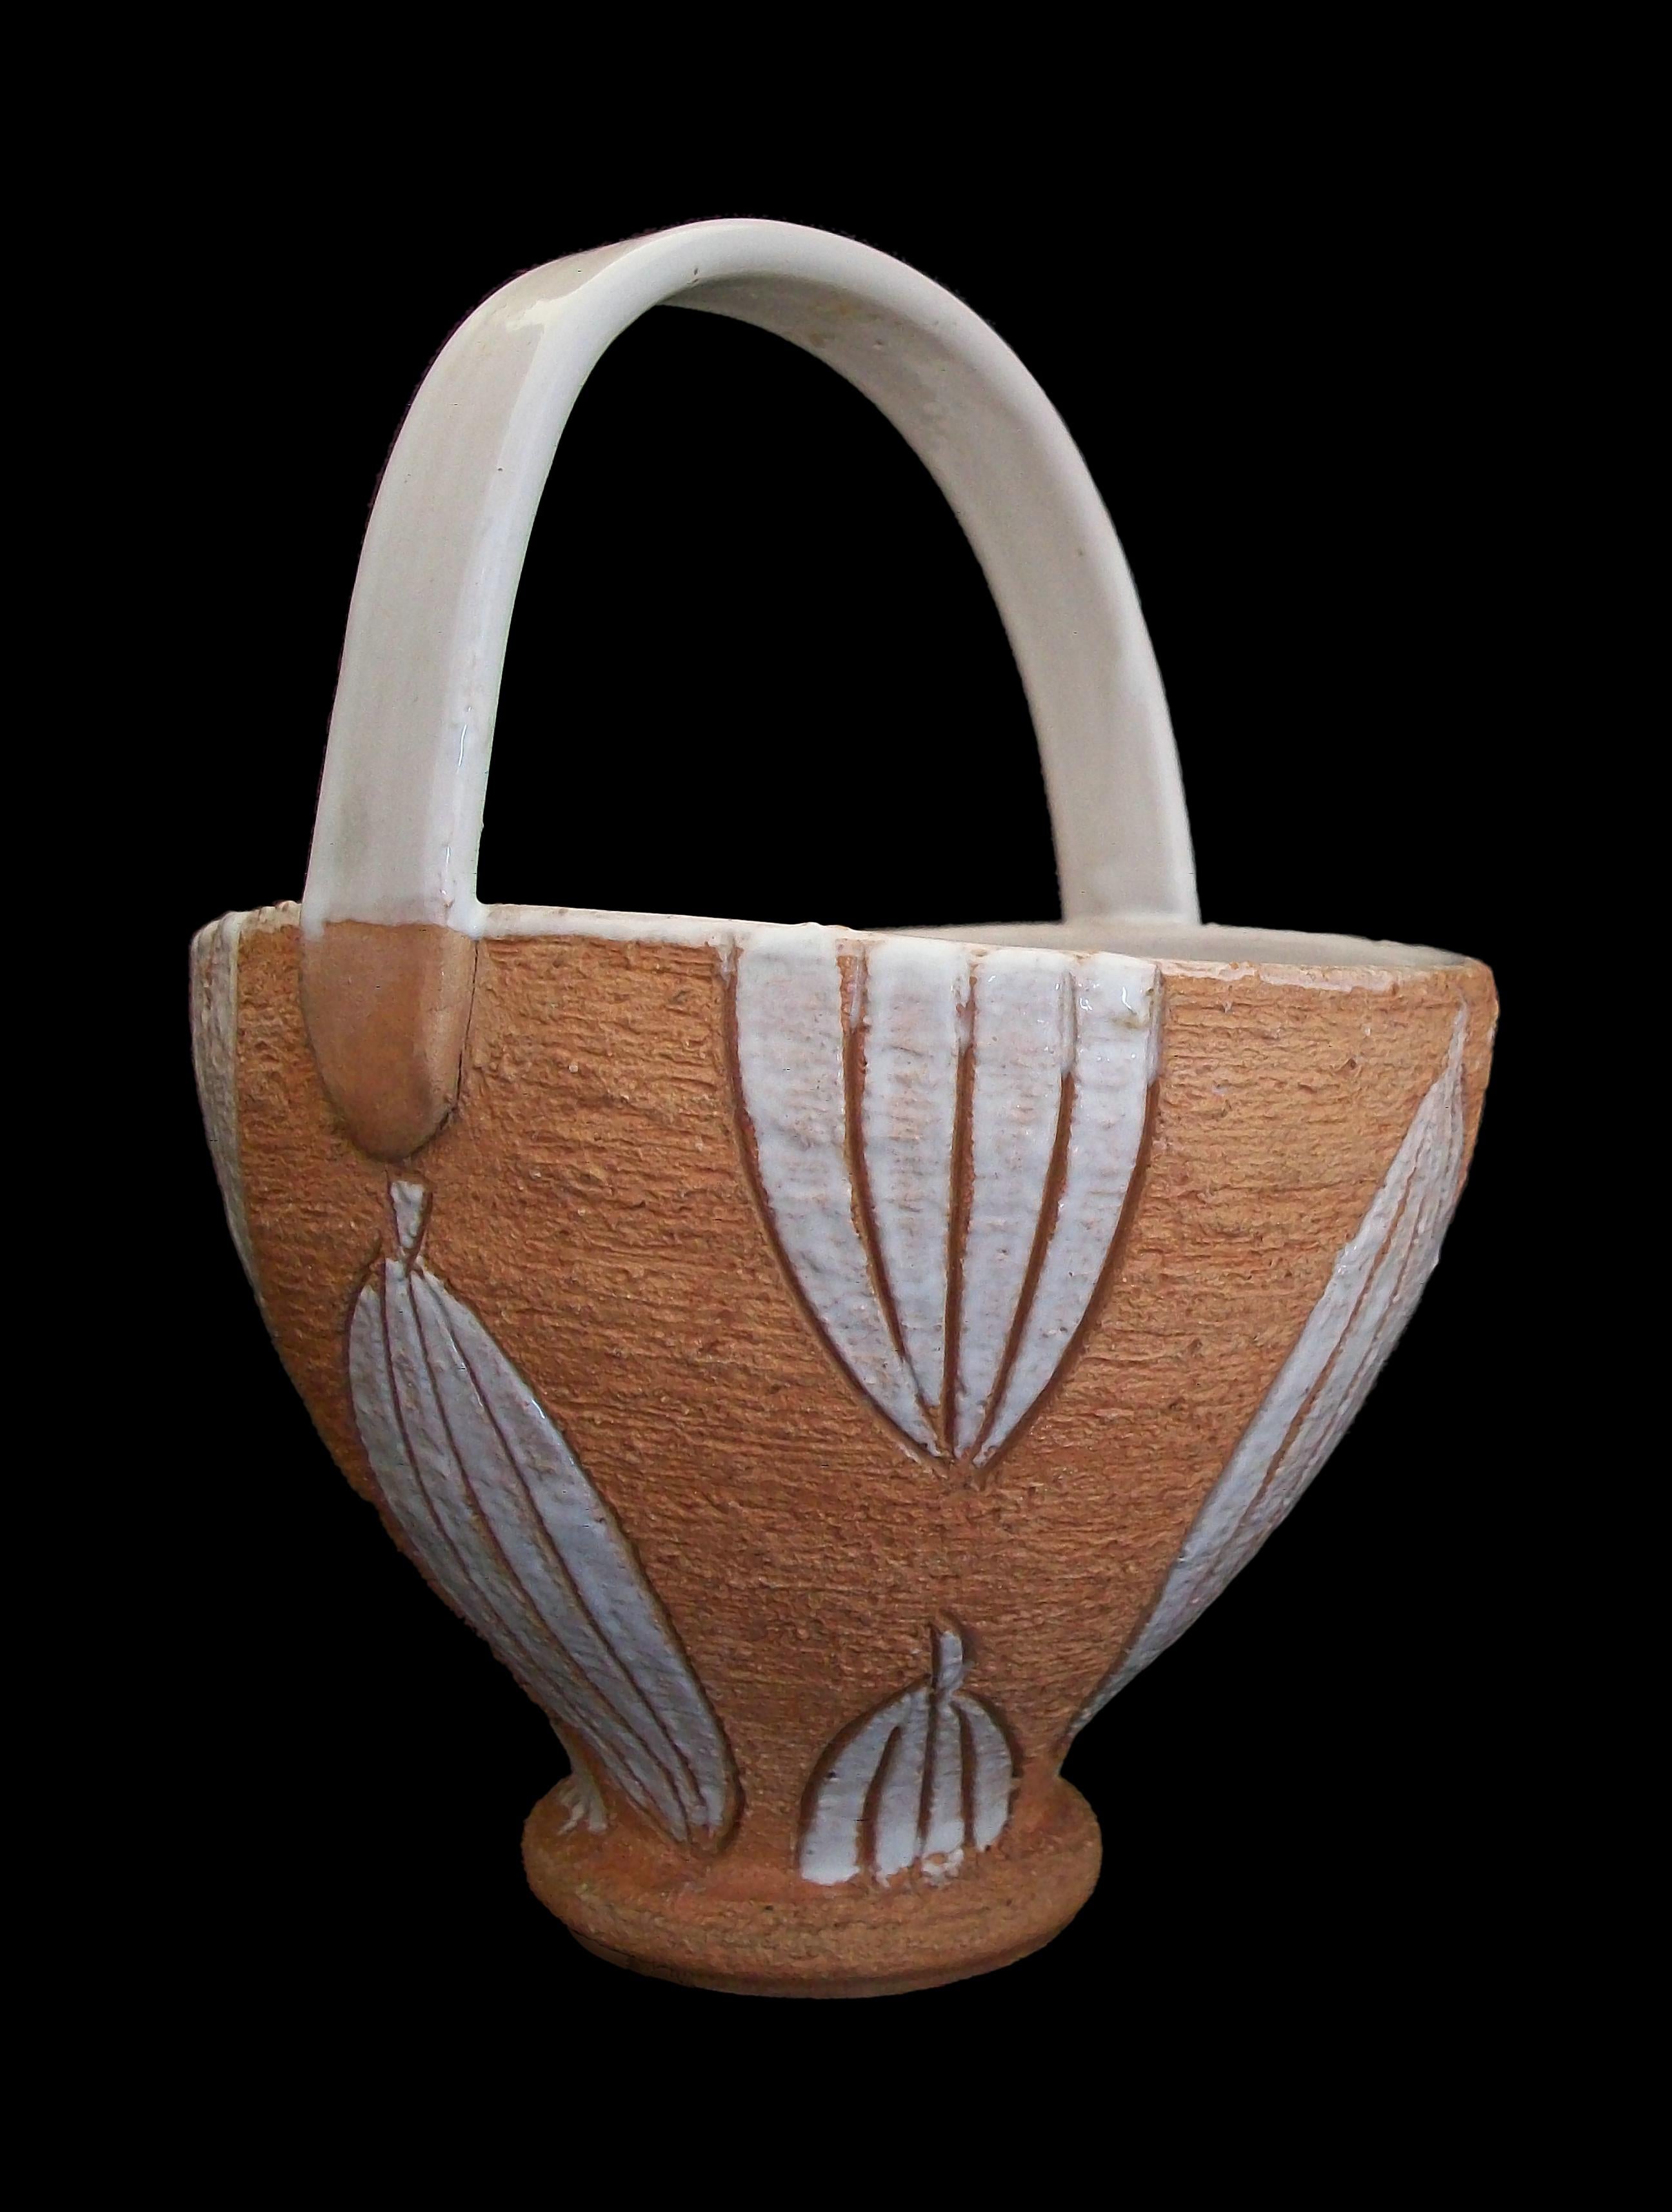 HORIZON - Mid Century Studio Keramik Korb / Schale / Vase mit weiß glasiertem Griff und Innenraum - handgefertigt - mit eingeschnittenen und weiß glasierten Blättern auf der Außenseite der Schale - unglasierte strukturierte Oberfläche auf der